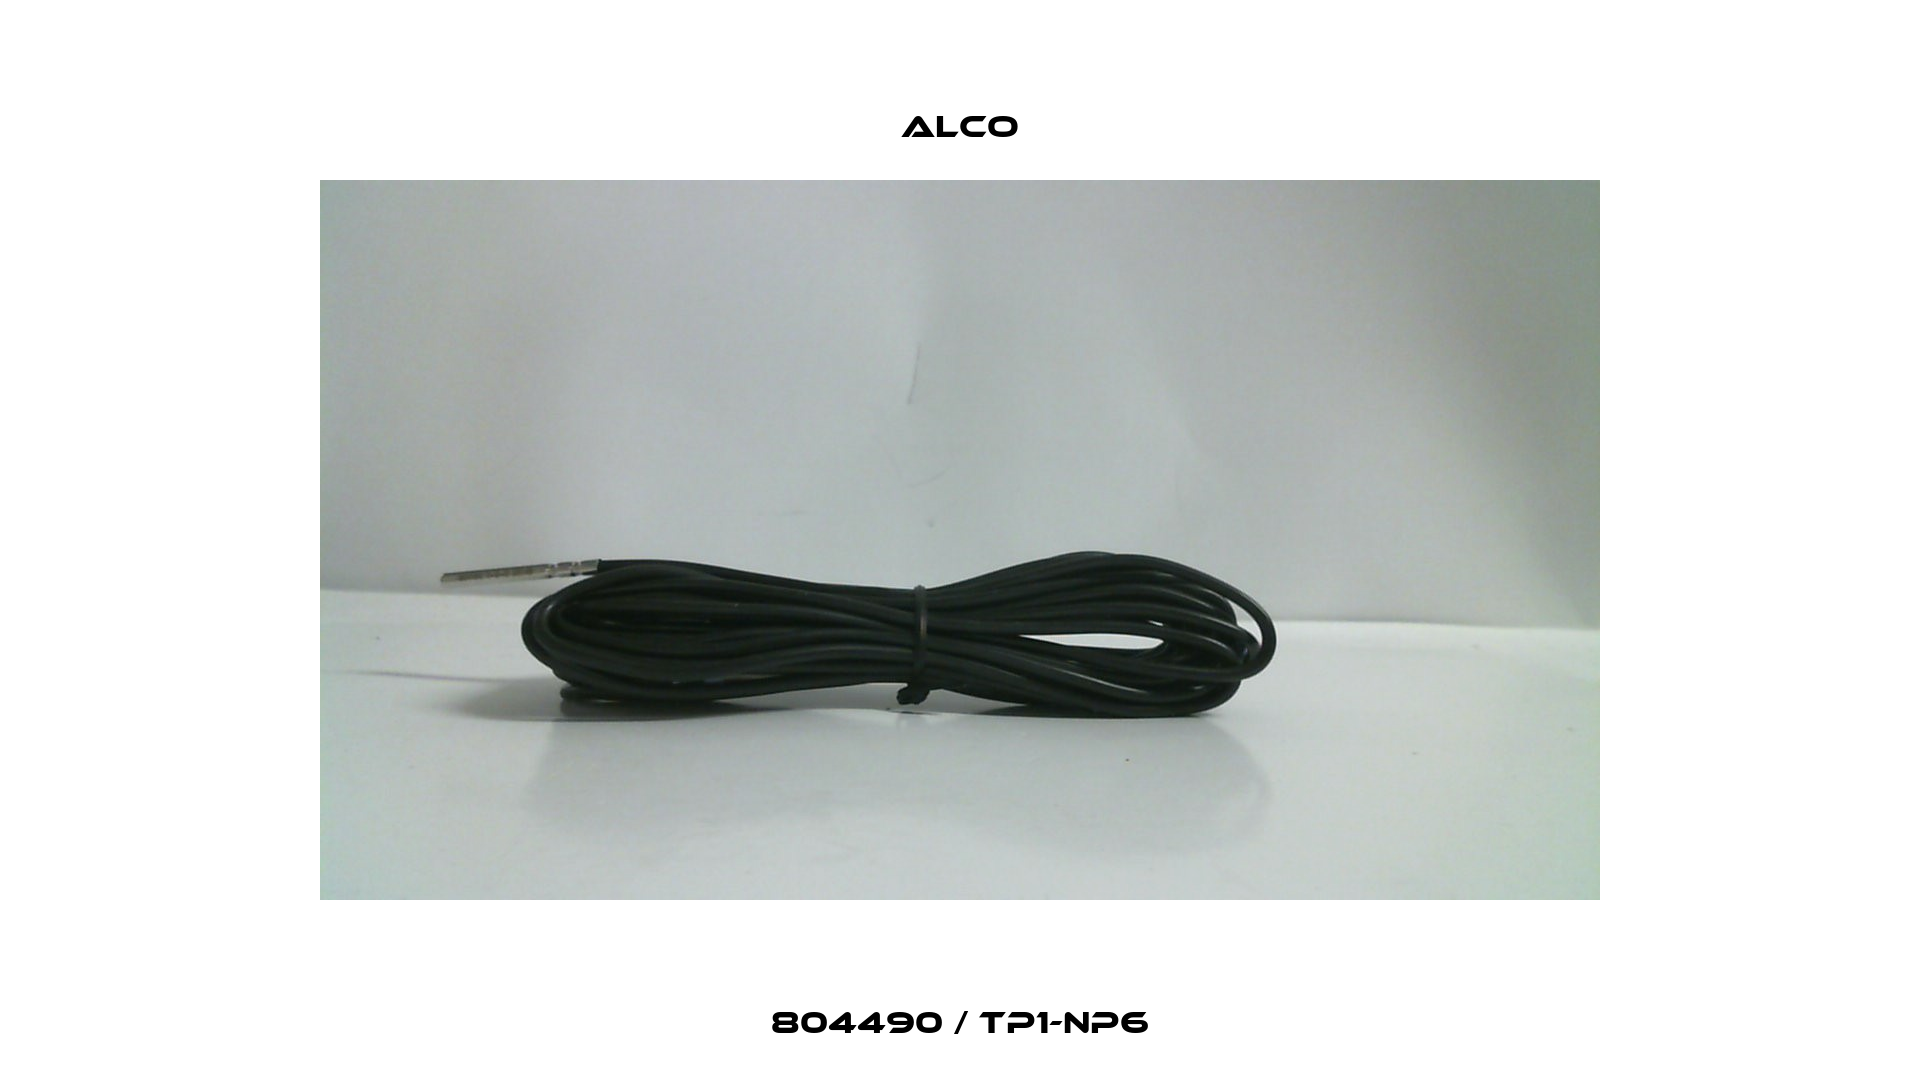 804490 / TP1-NP6 Alco